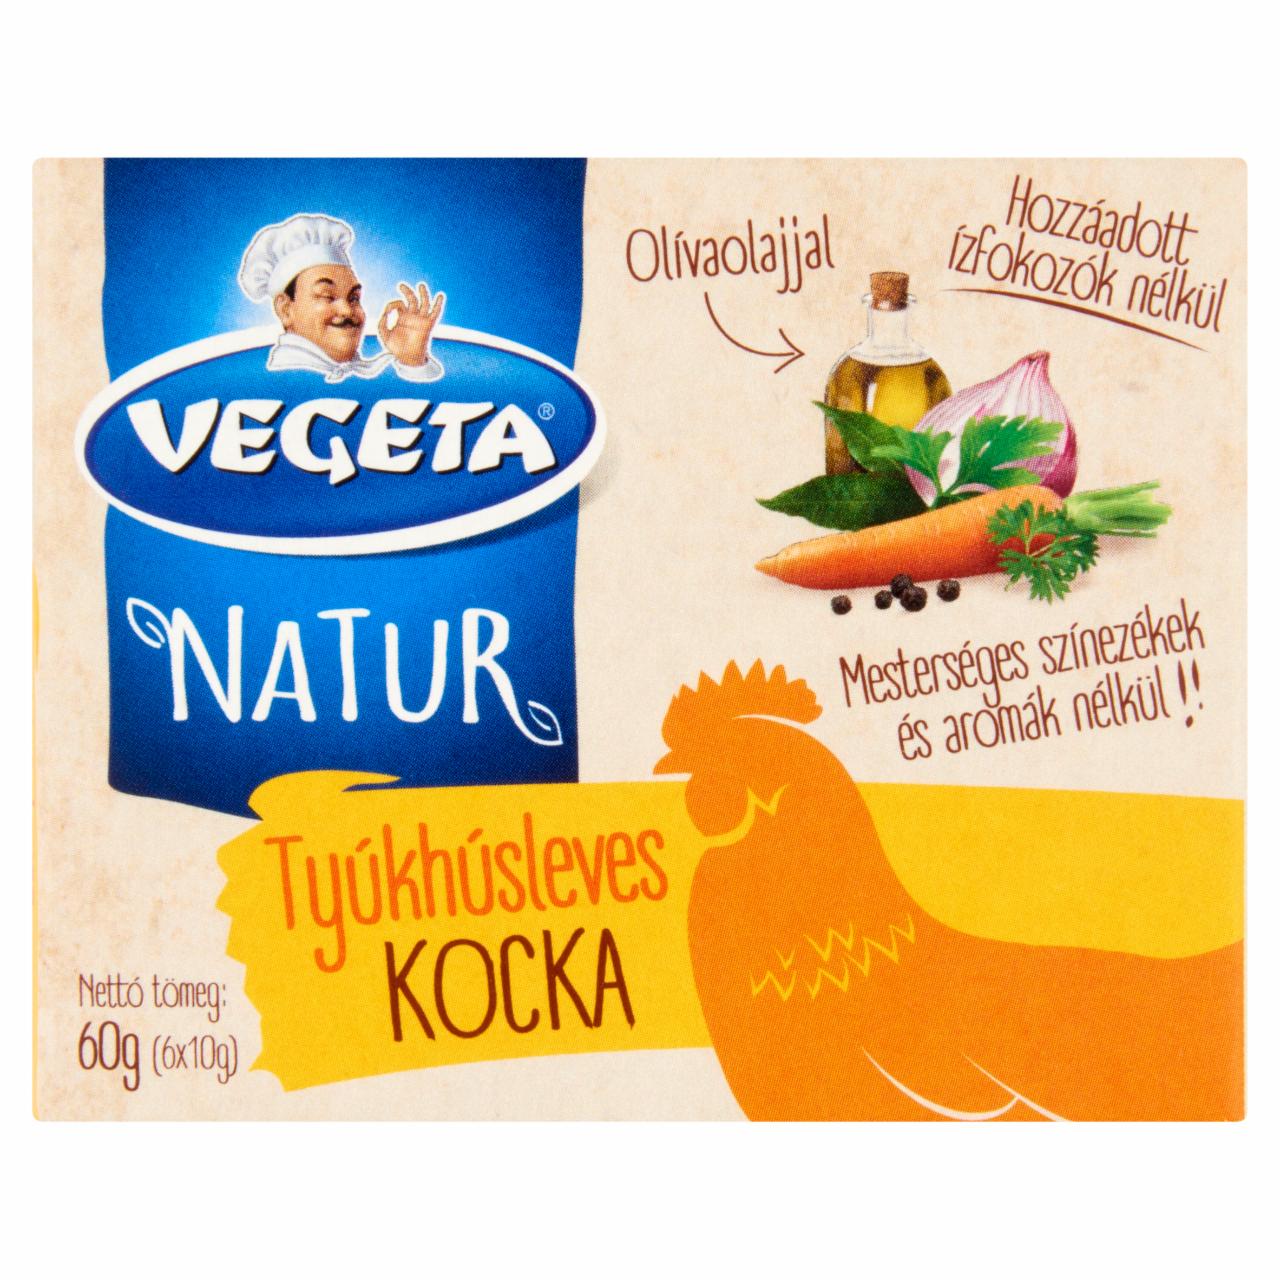 Képek - Vegeta Natur tyúkhúsleves-kocka 6 x 10 g